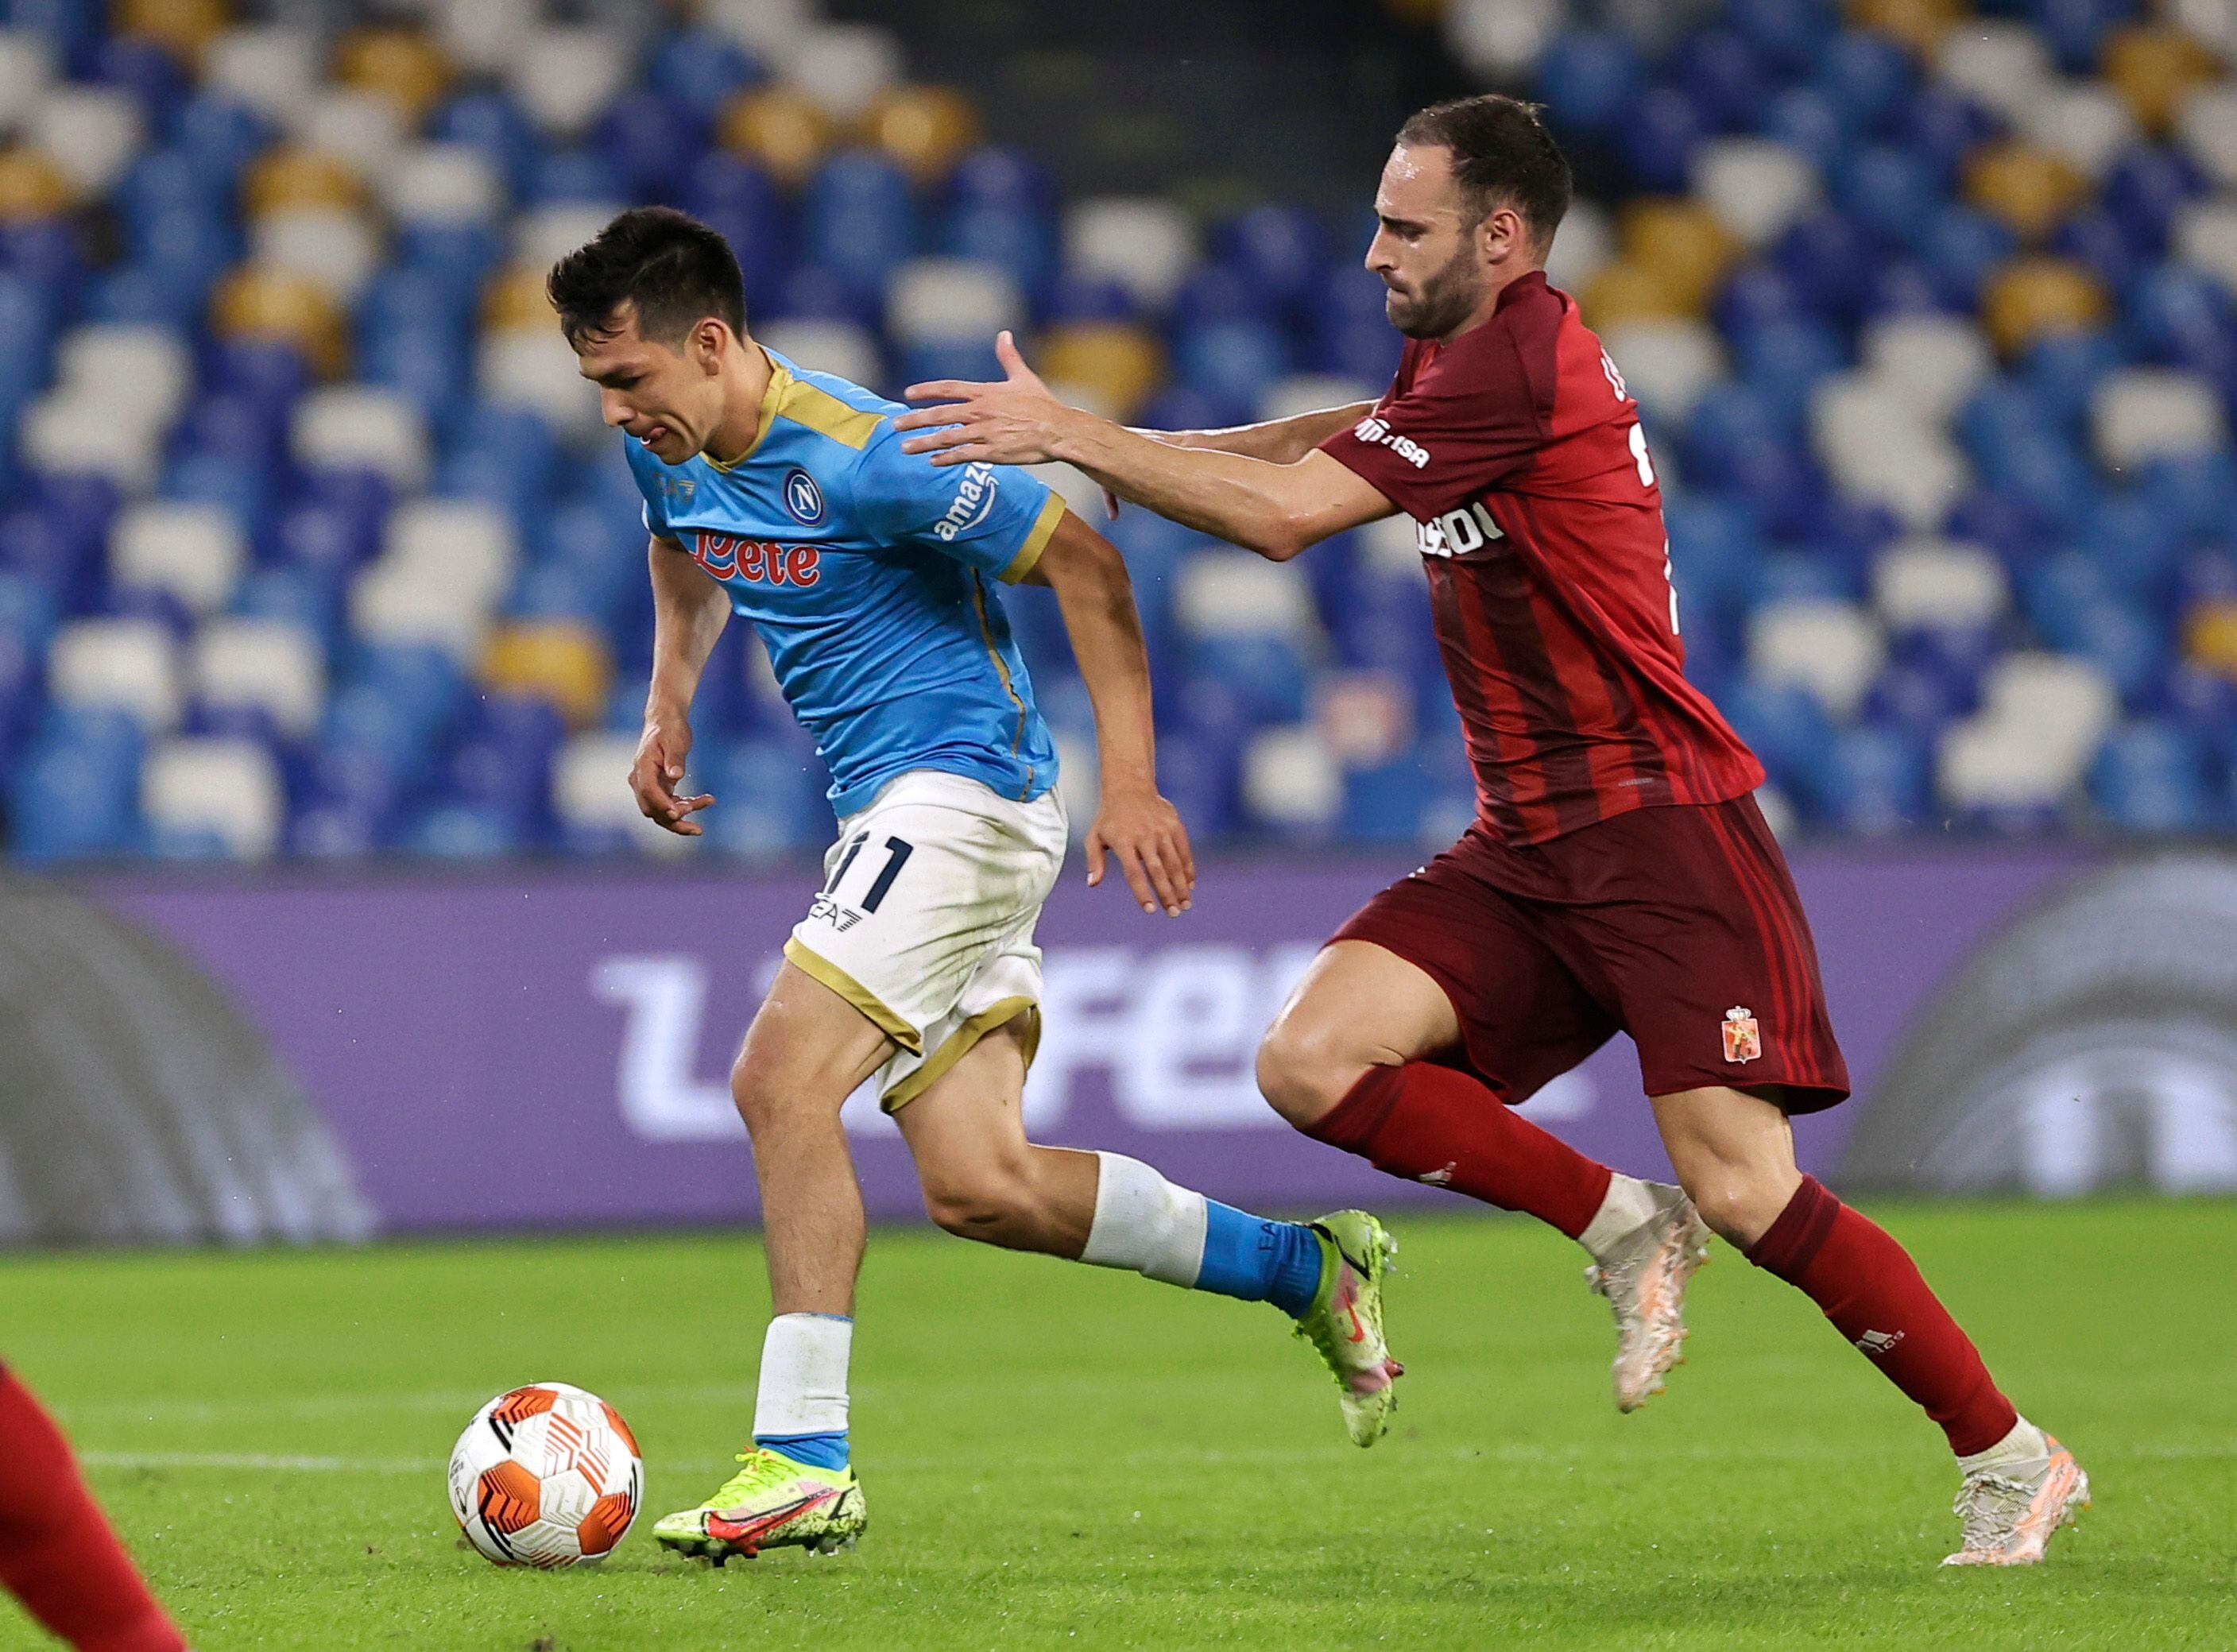 Lozano es uno de los referentes del Napoli, con quien actualmente mantiene la primera posición del Calcio italiano (Foto: Ciro De Luca/REUTERS)



